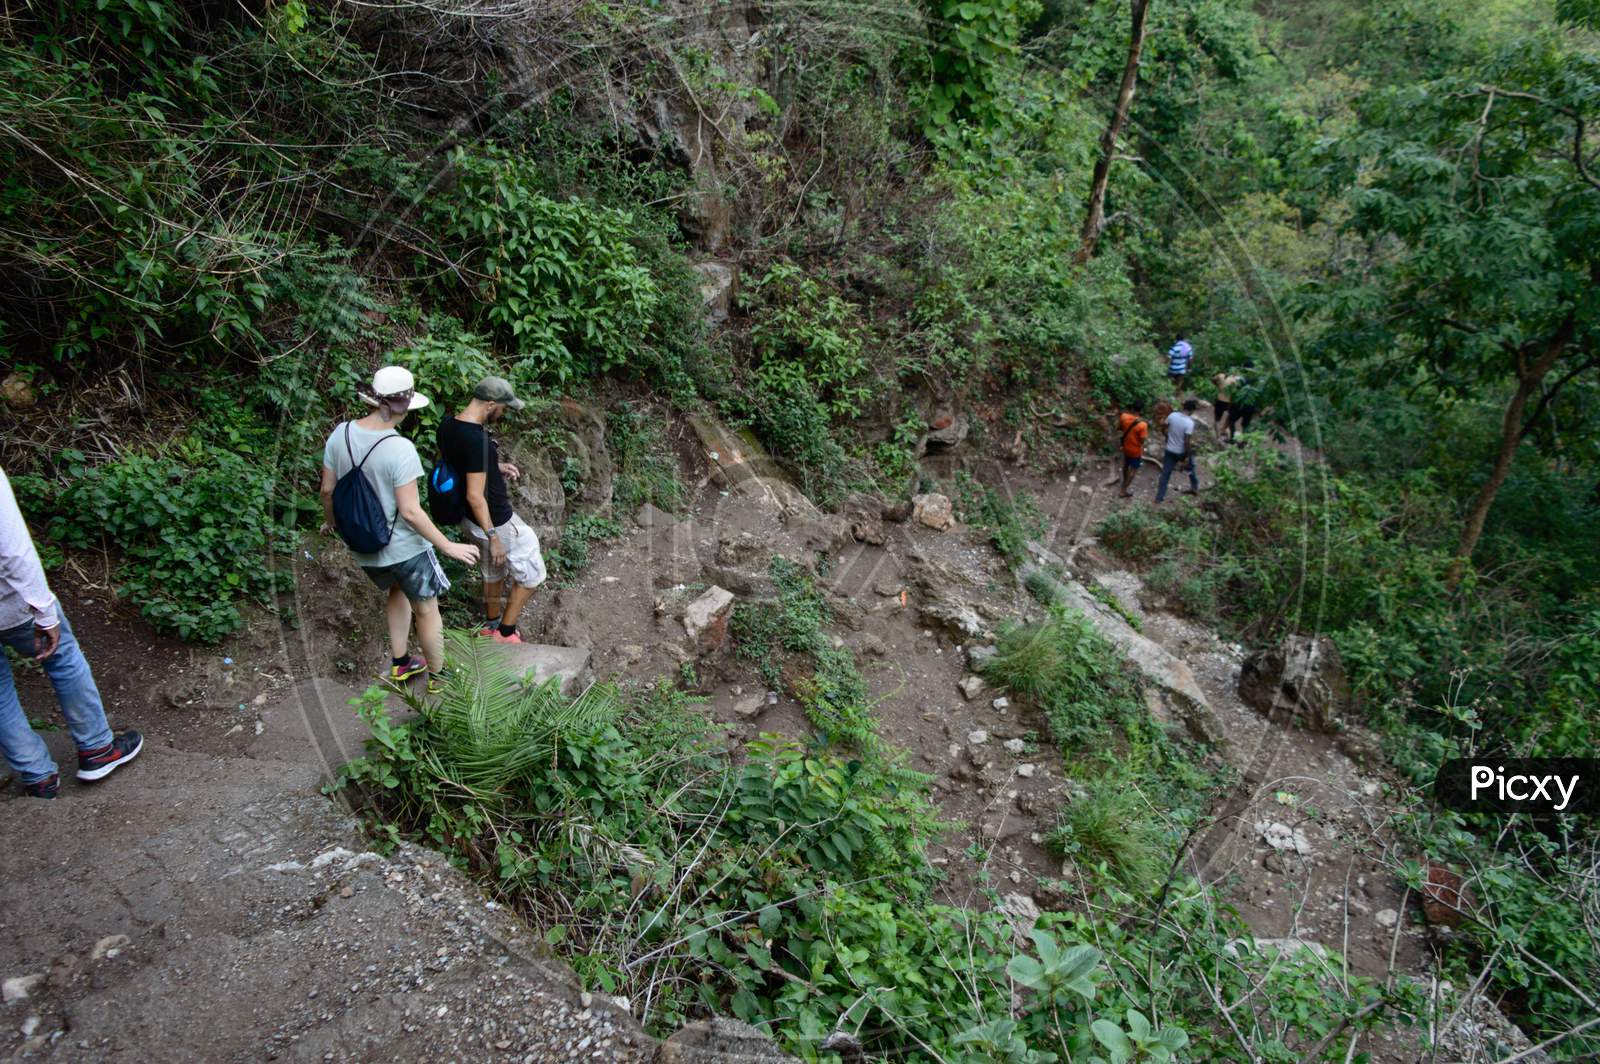 Group Of People Going Down,Trekking, From The Famous Neer Garh Waterfall, Rishikesh, Uttarakhand India.